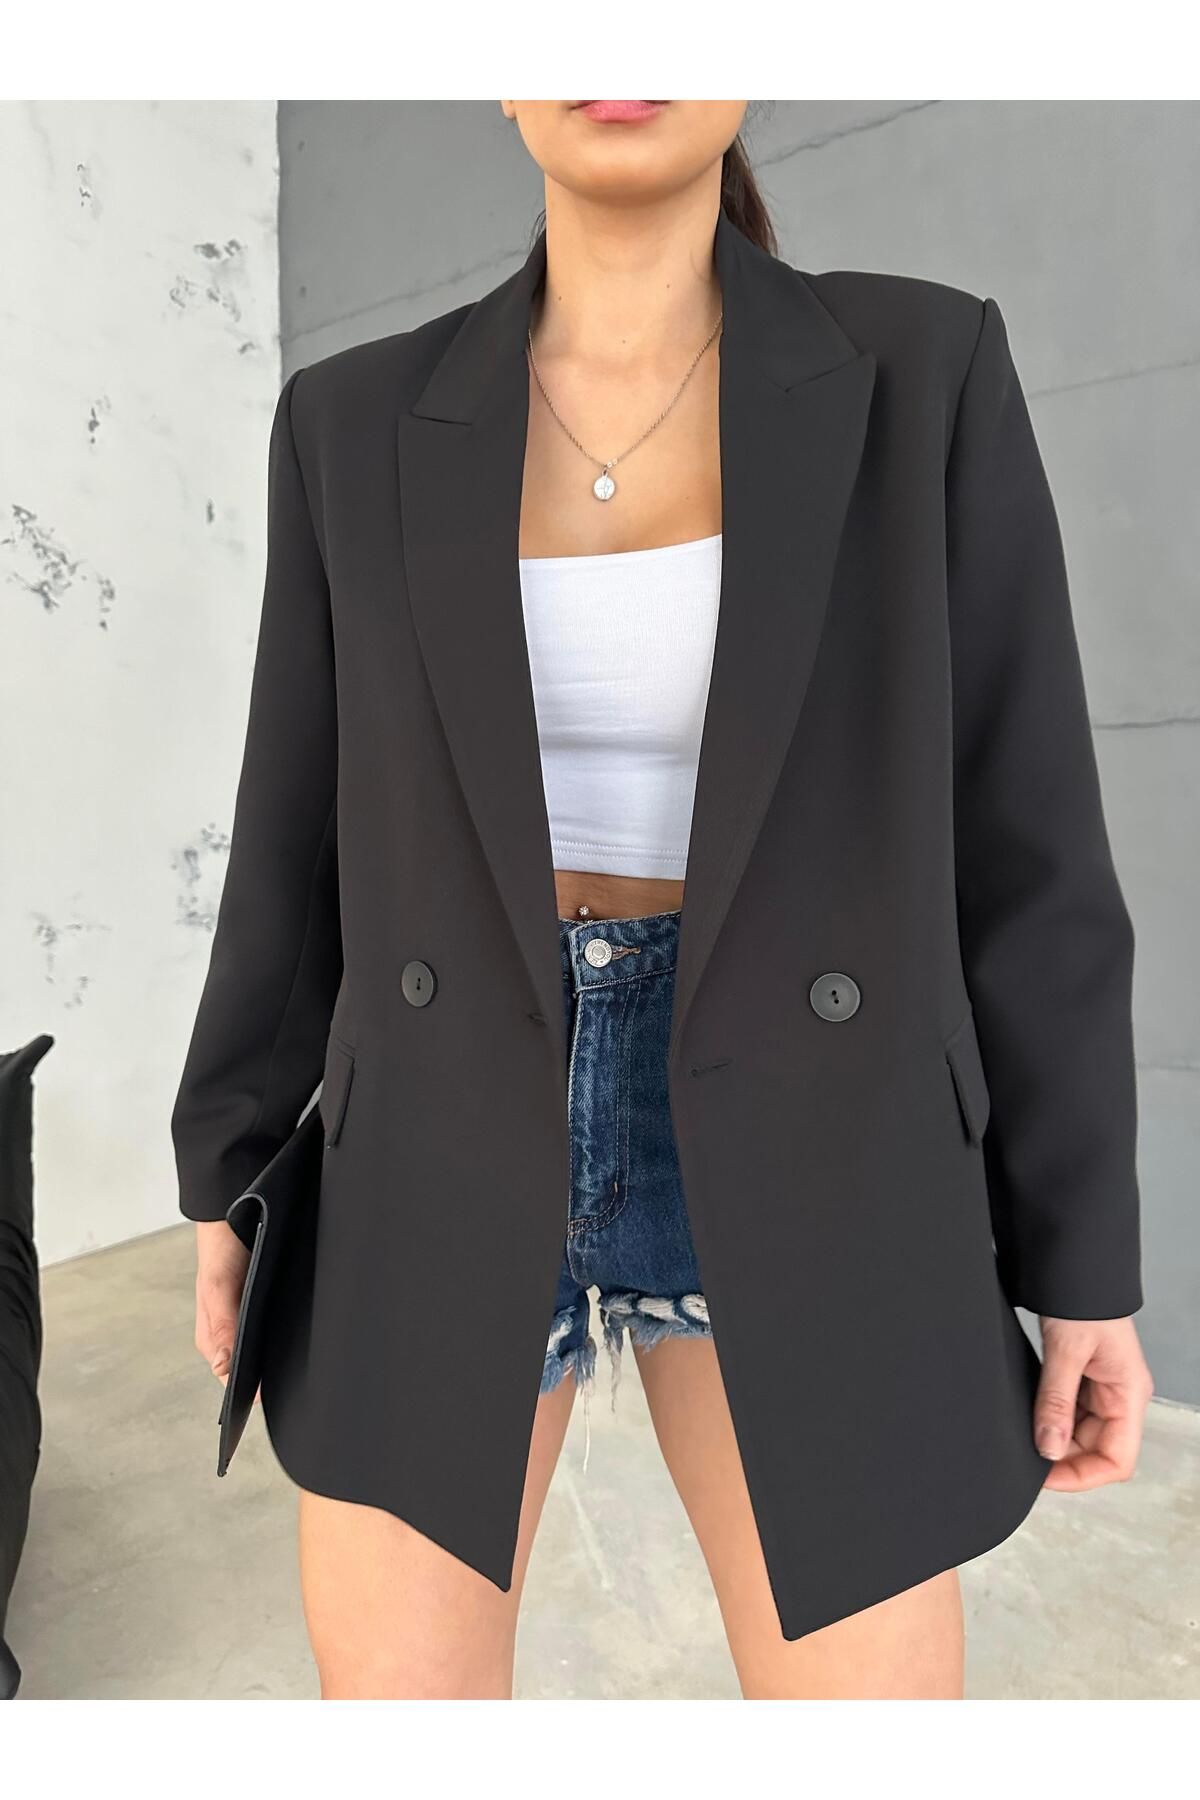 MALDİA SHOP Kadın Double Kumaş Astarlı Siyah Blazer Ceket